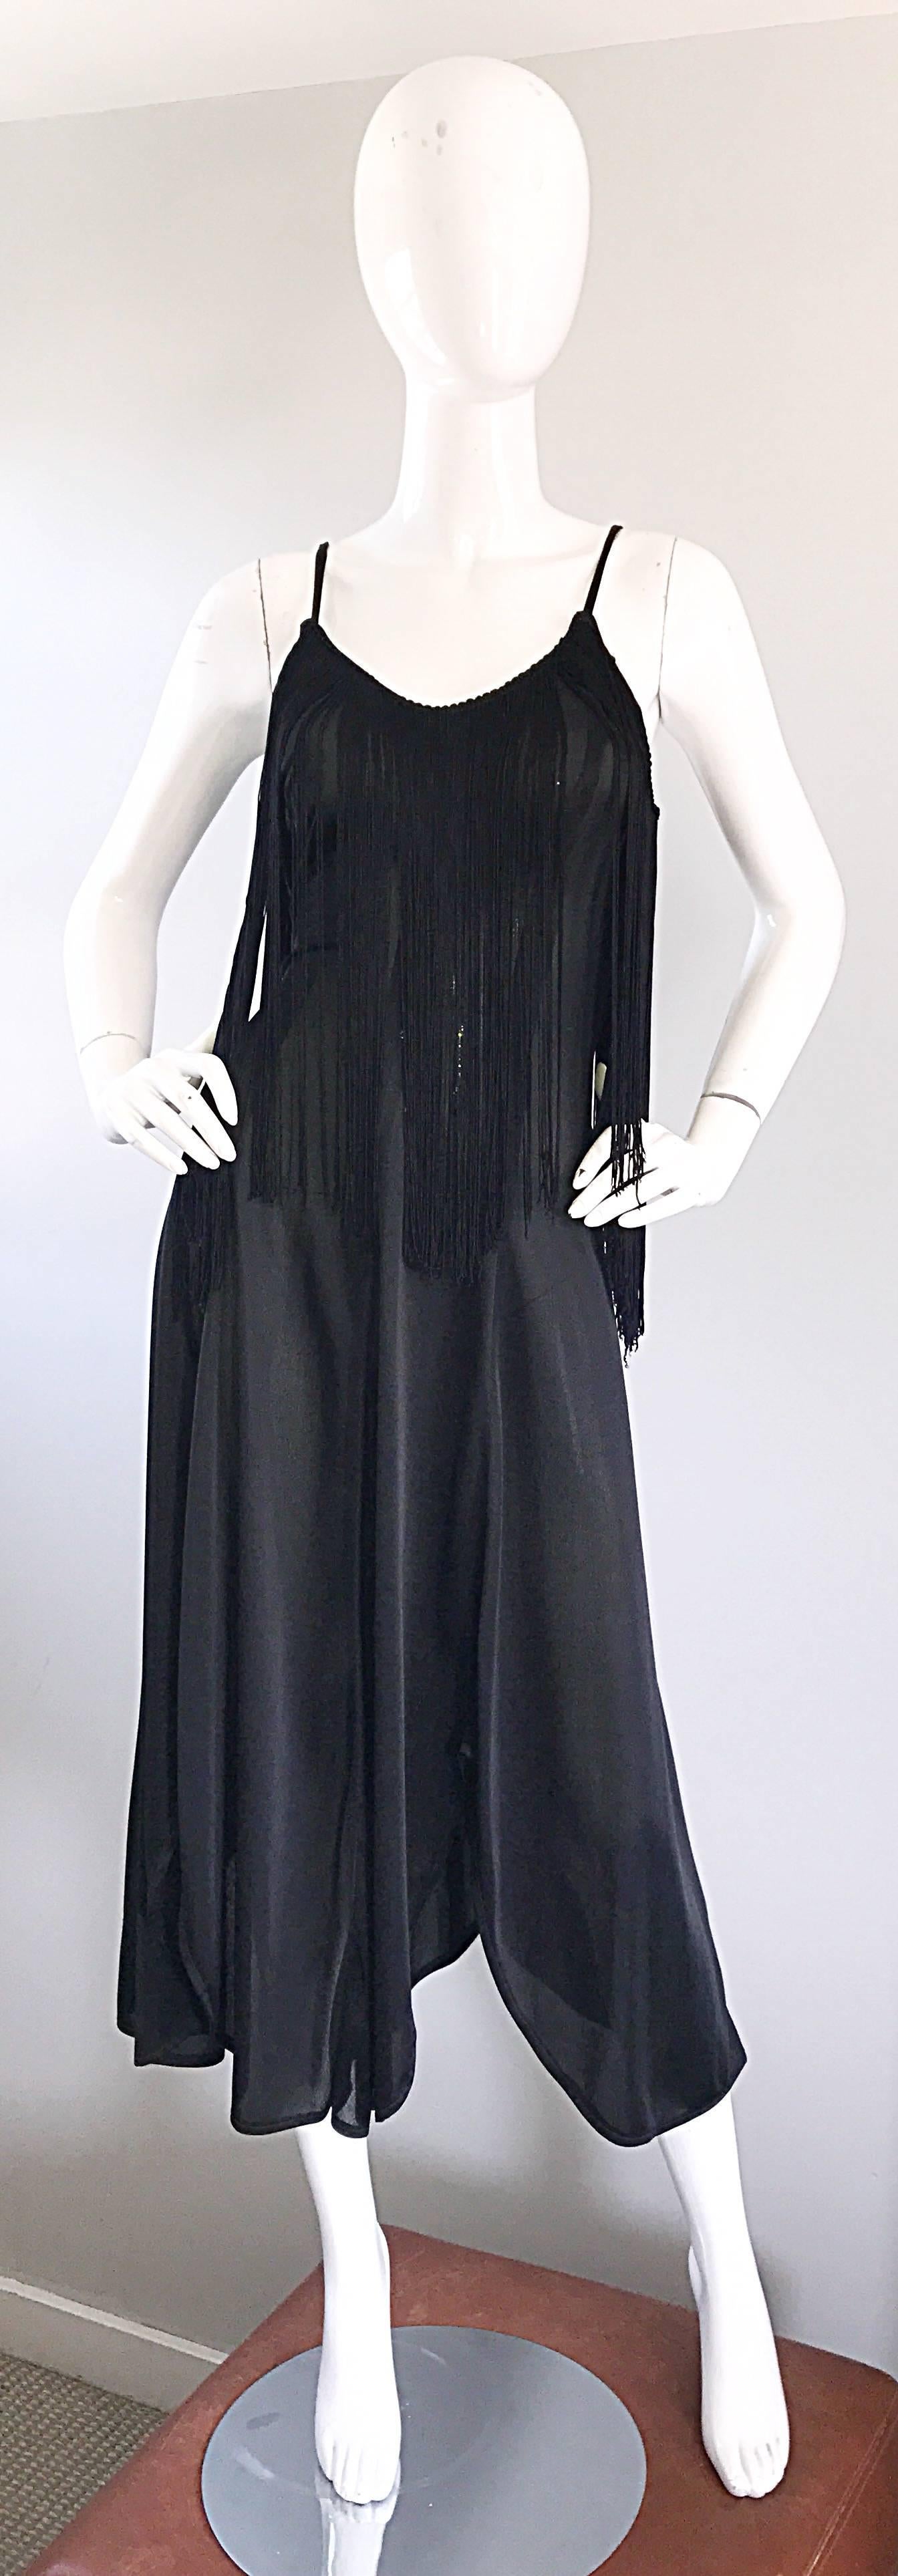 Incroyable robe noire à franges disco des années 70 ! L'ourlet est en forme de mouchoir et le corsage est taillé sur mesure. Des tonnes de franges au niveau du buste font de cette robe une excellente robe de danse ! Ce bijou est une véritable ode